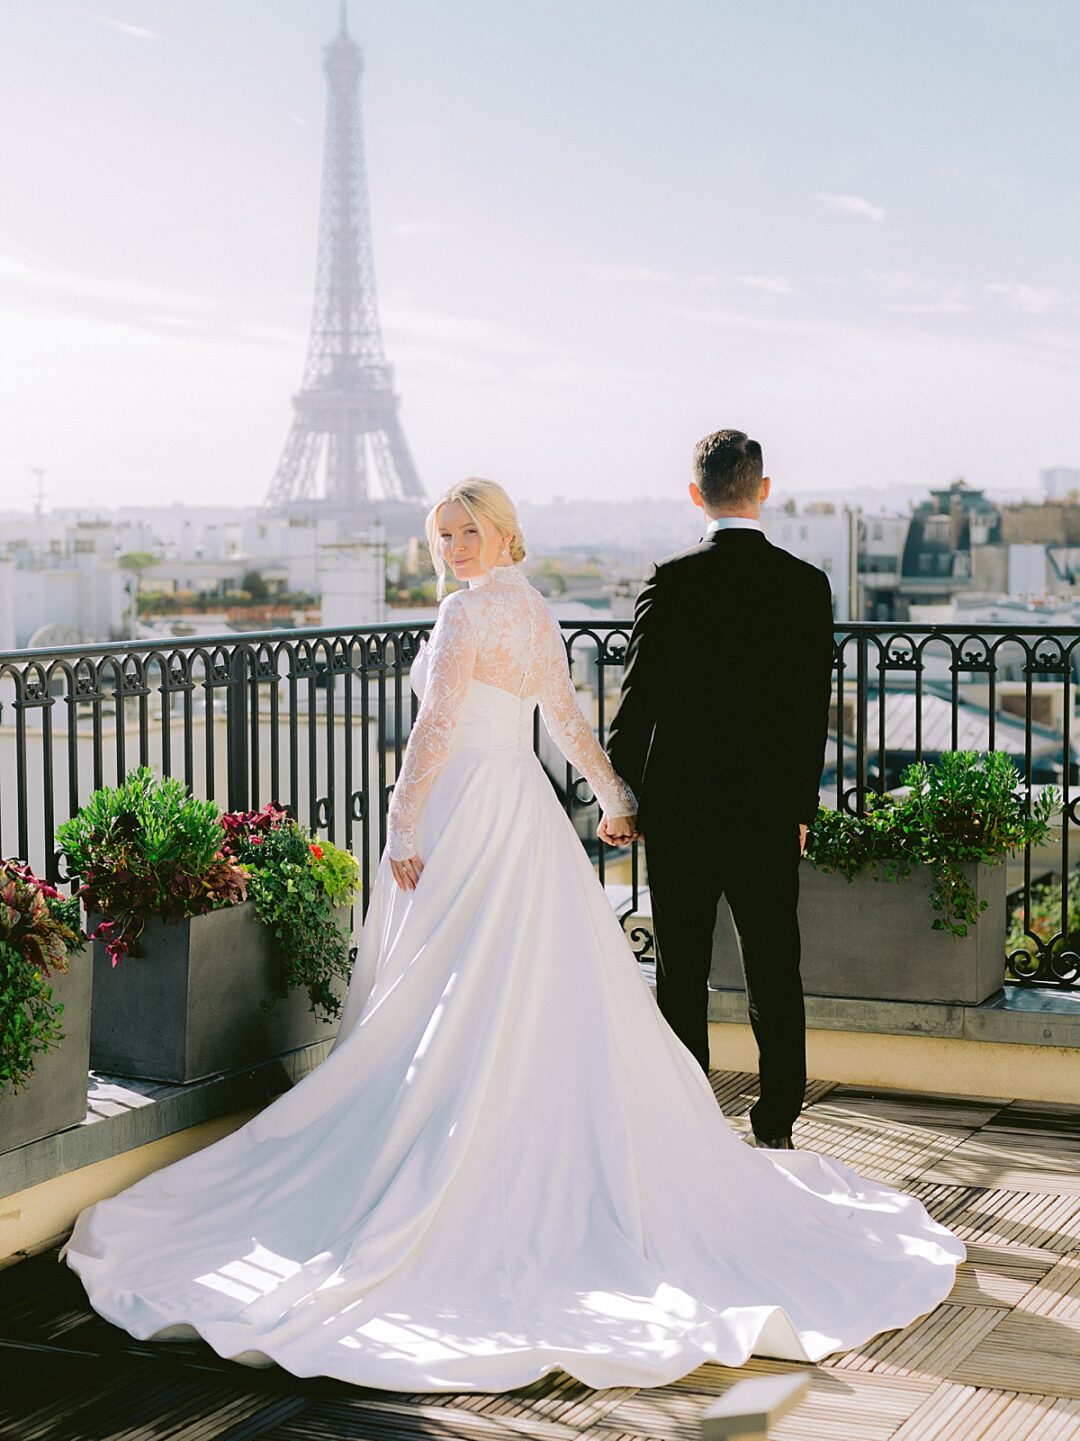 Eiffel Tower / Wedding Tower/ Wedding Display